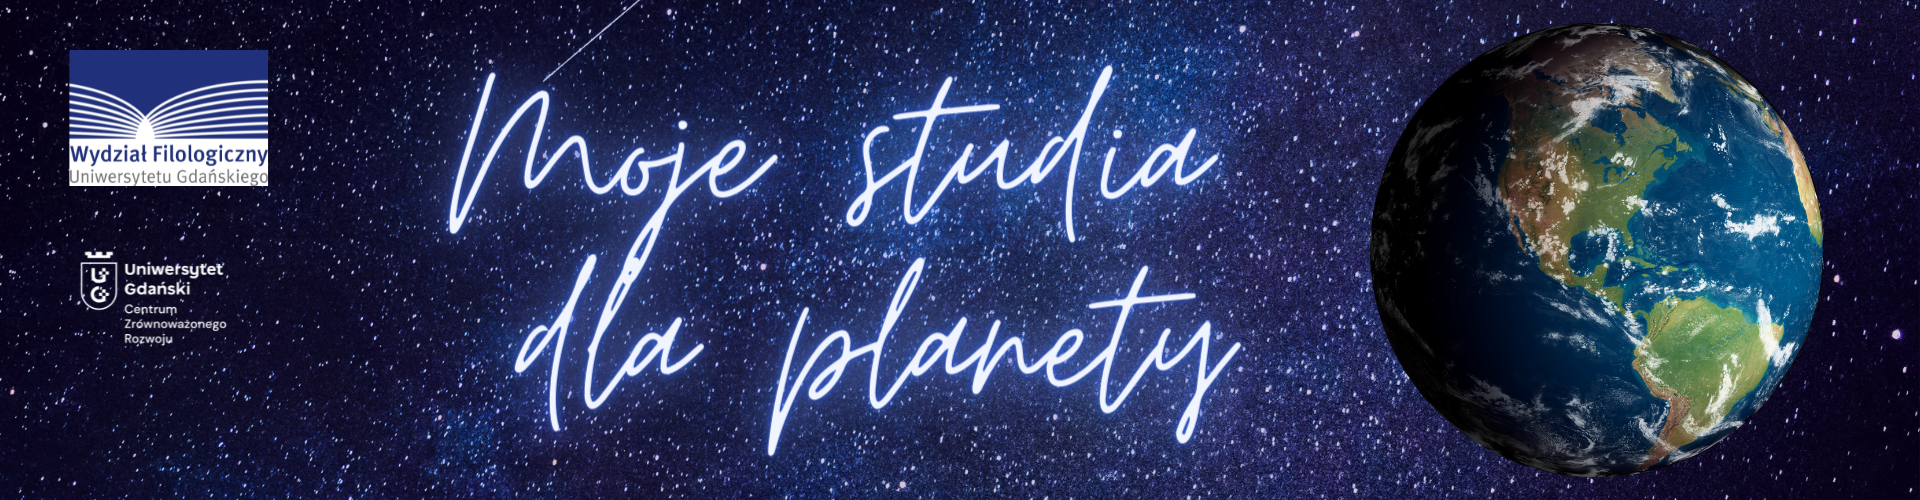 Moje studia dla planety #studiadlaplanety. Konkurs dla kandydatów na studia i studentów